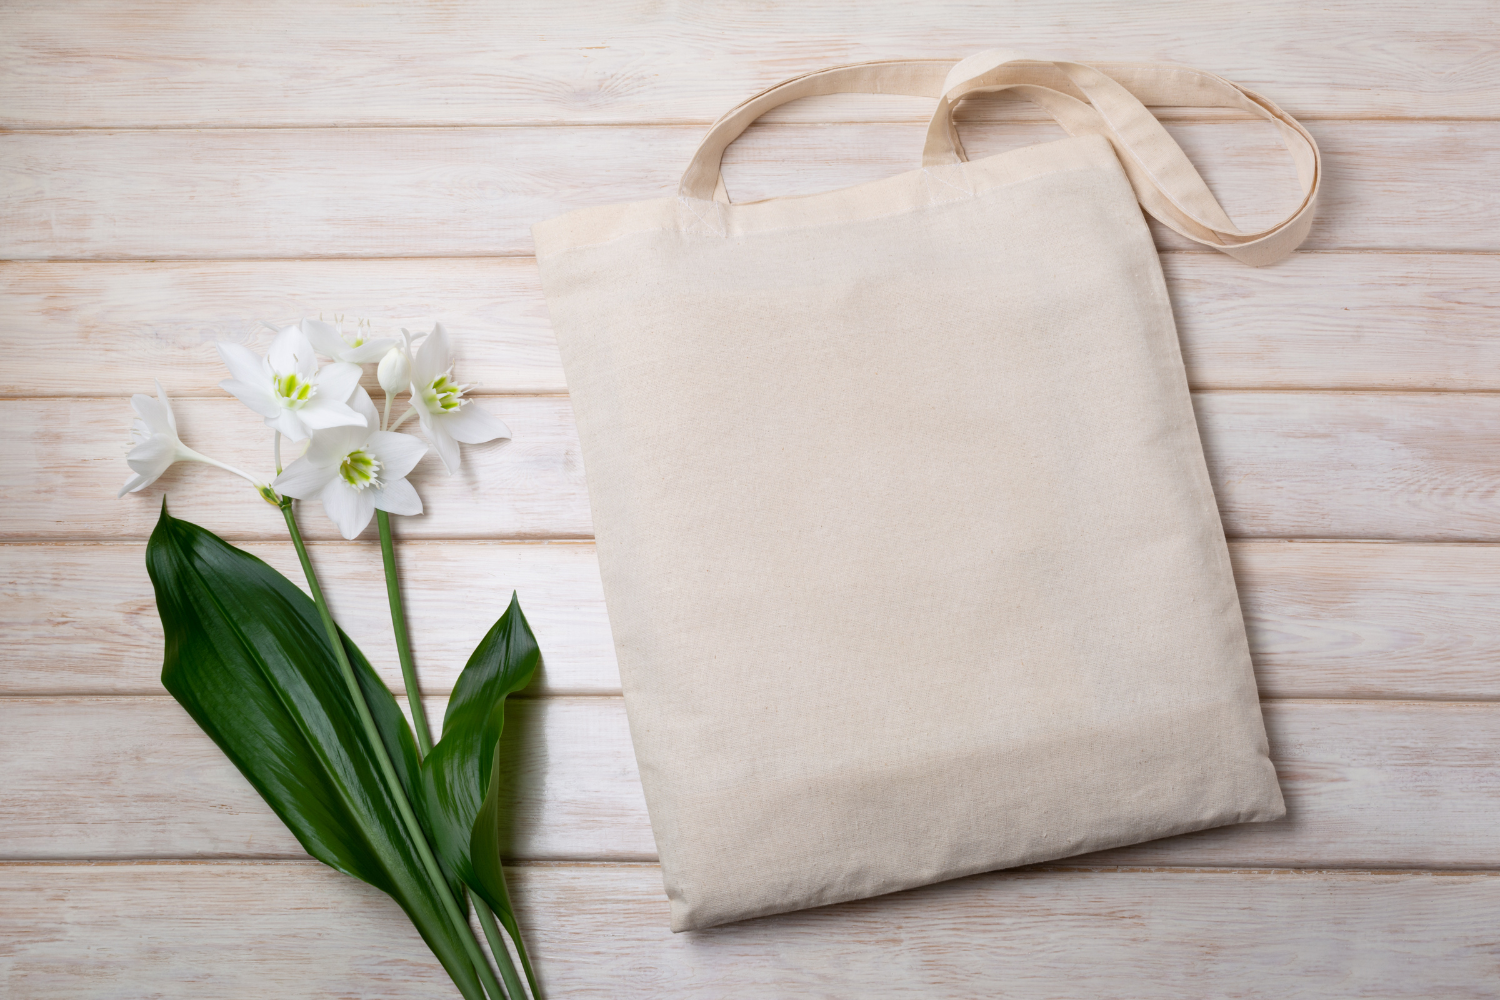 a reusable shopping bag next to a flower